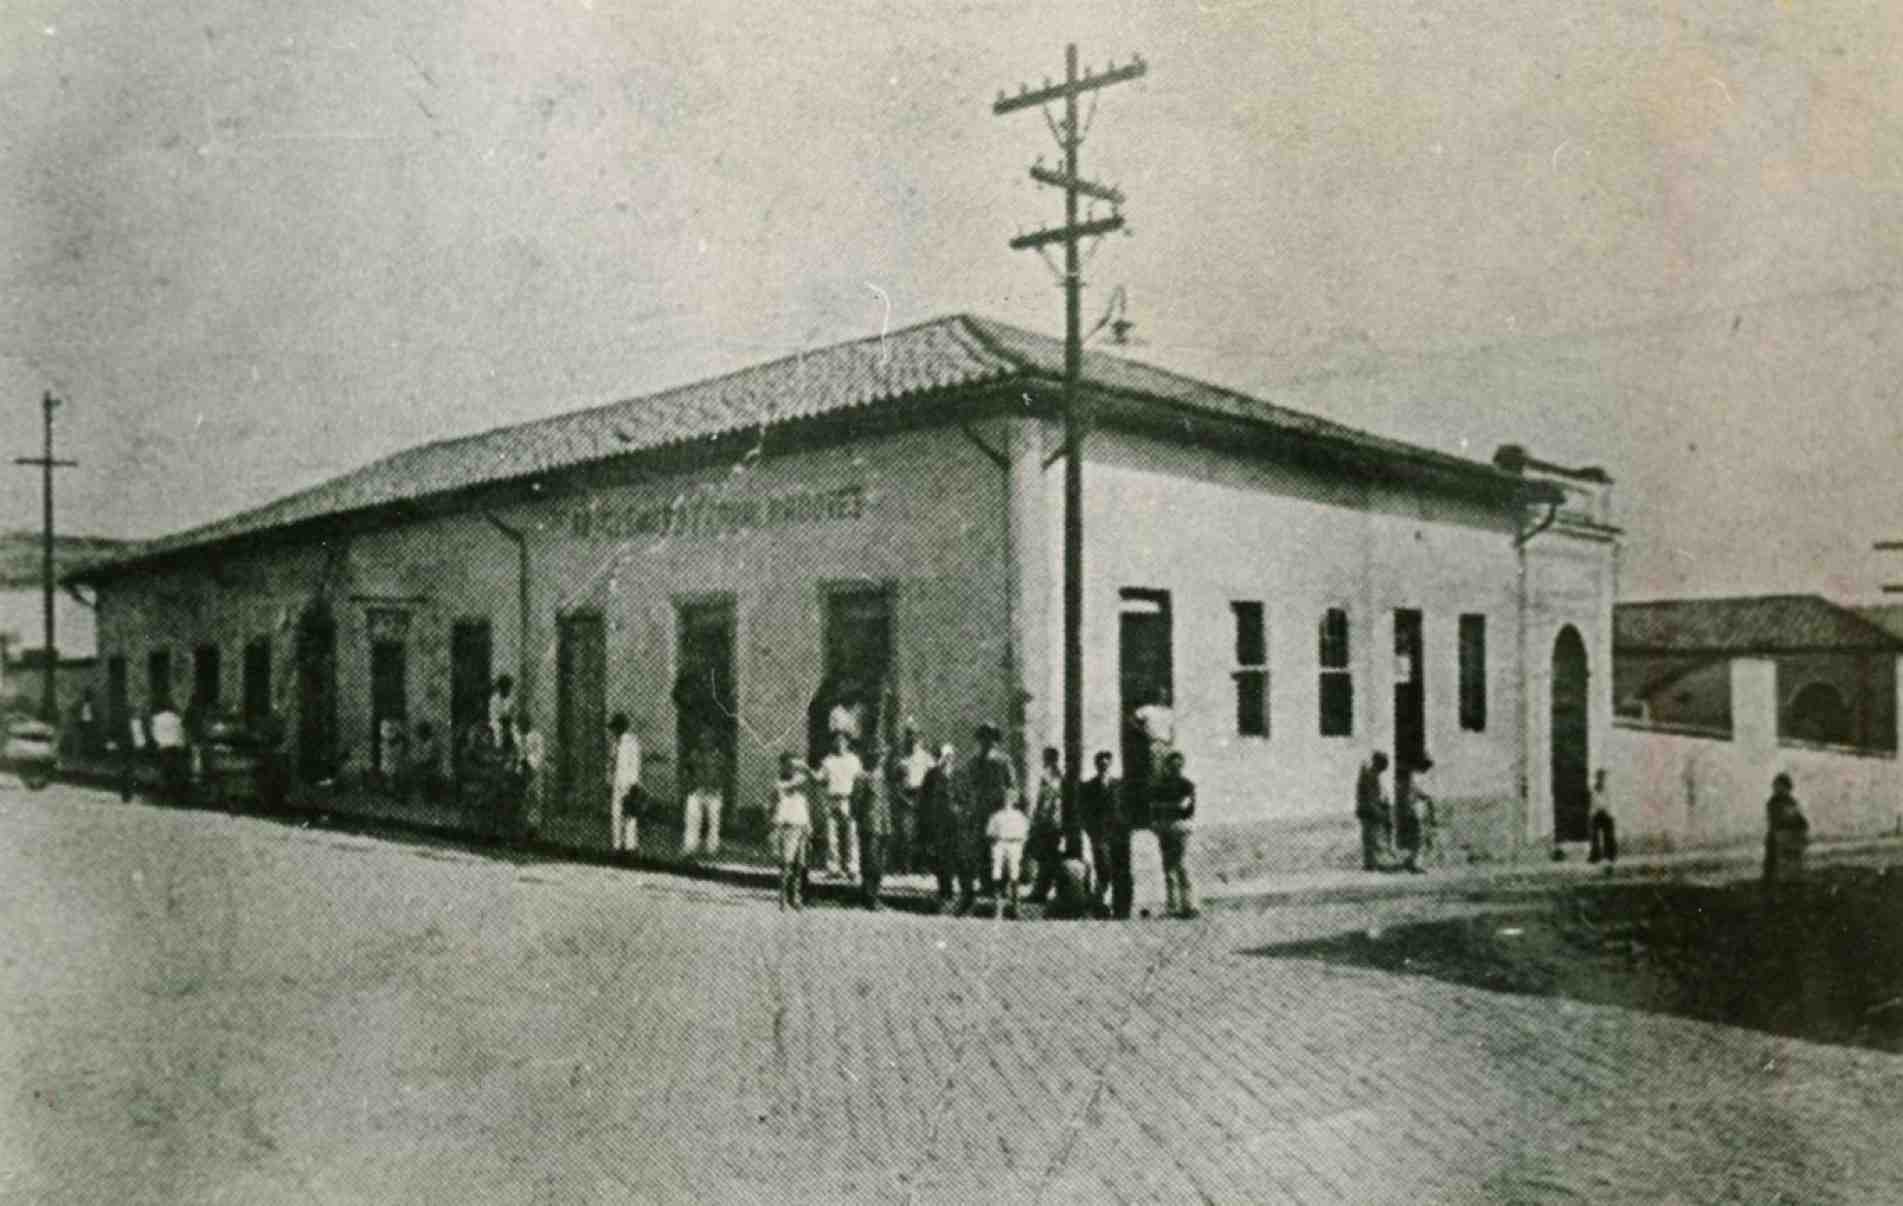 Imagem do antigo mercado, que foi demolido para dar lugar ao prédio atual, inaugurado em 1938.